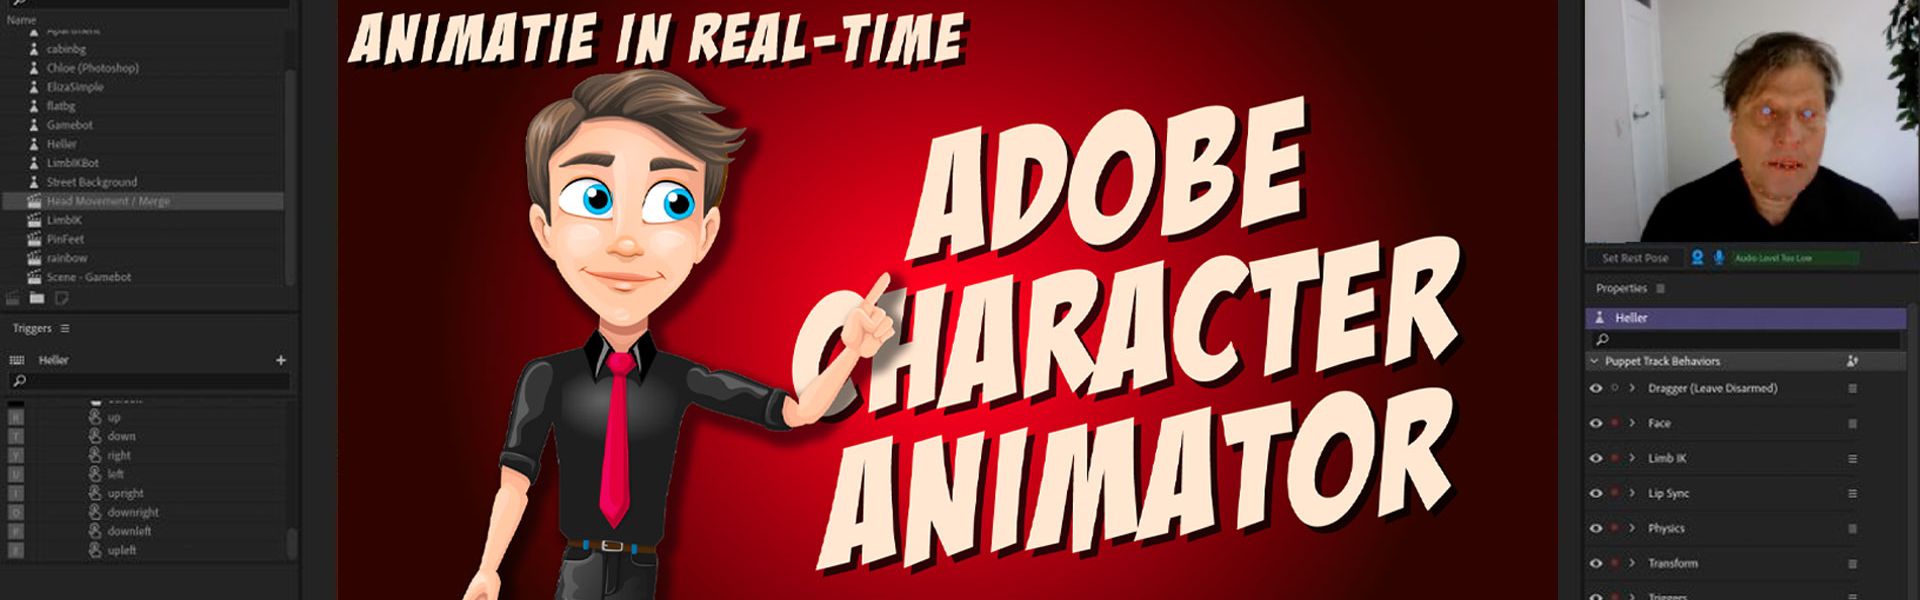 2D animatie karakters tot leven brengen met "Character Animator"